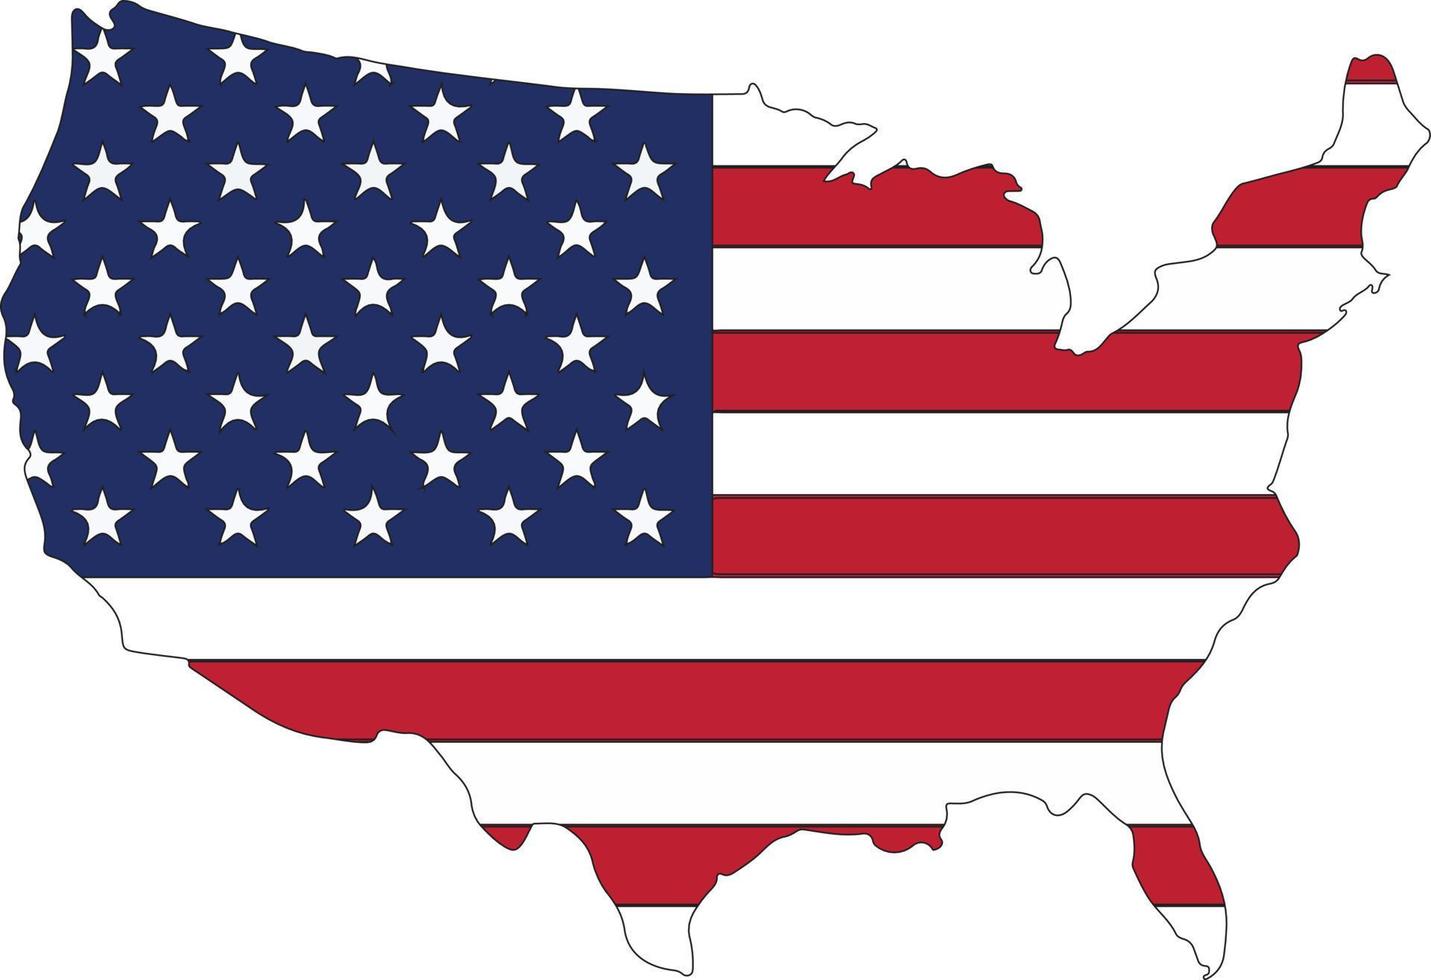 https://static.vecteezy.com/ti/vetor-gratis/p1/22589278-eua-mapa-bandeira-mapa-do-a-eua-com-a-nacional-bandeira-do-unidos-estados-do-america-isolado-em-branco-fundo-ilustracao-vetor.jpg